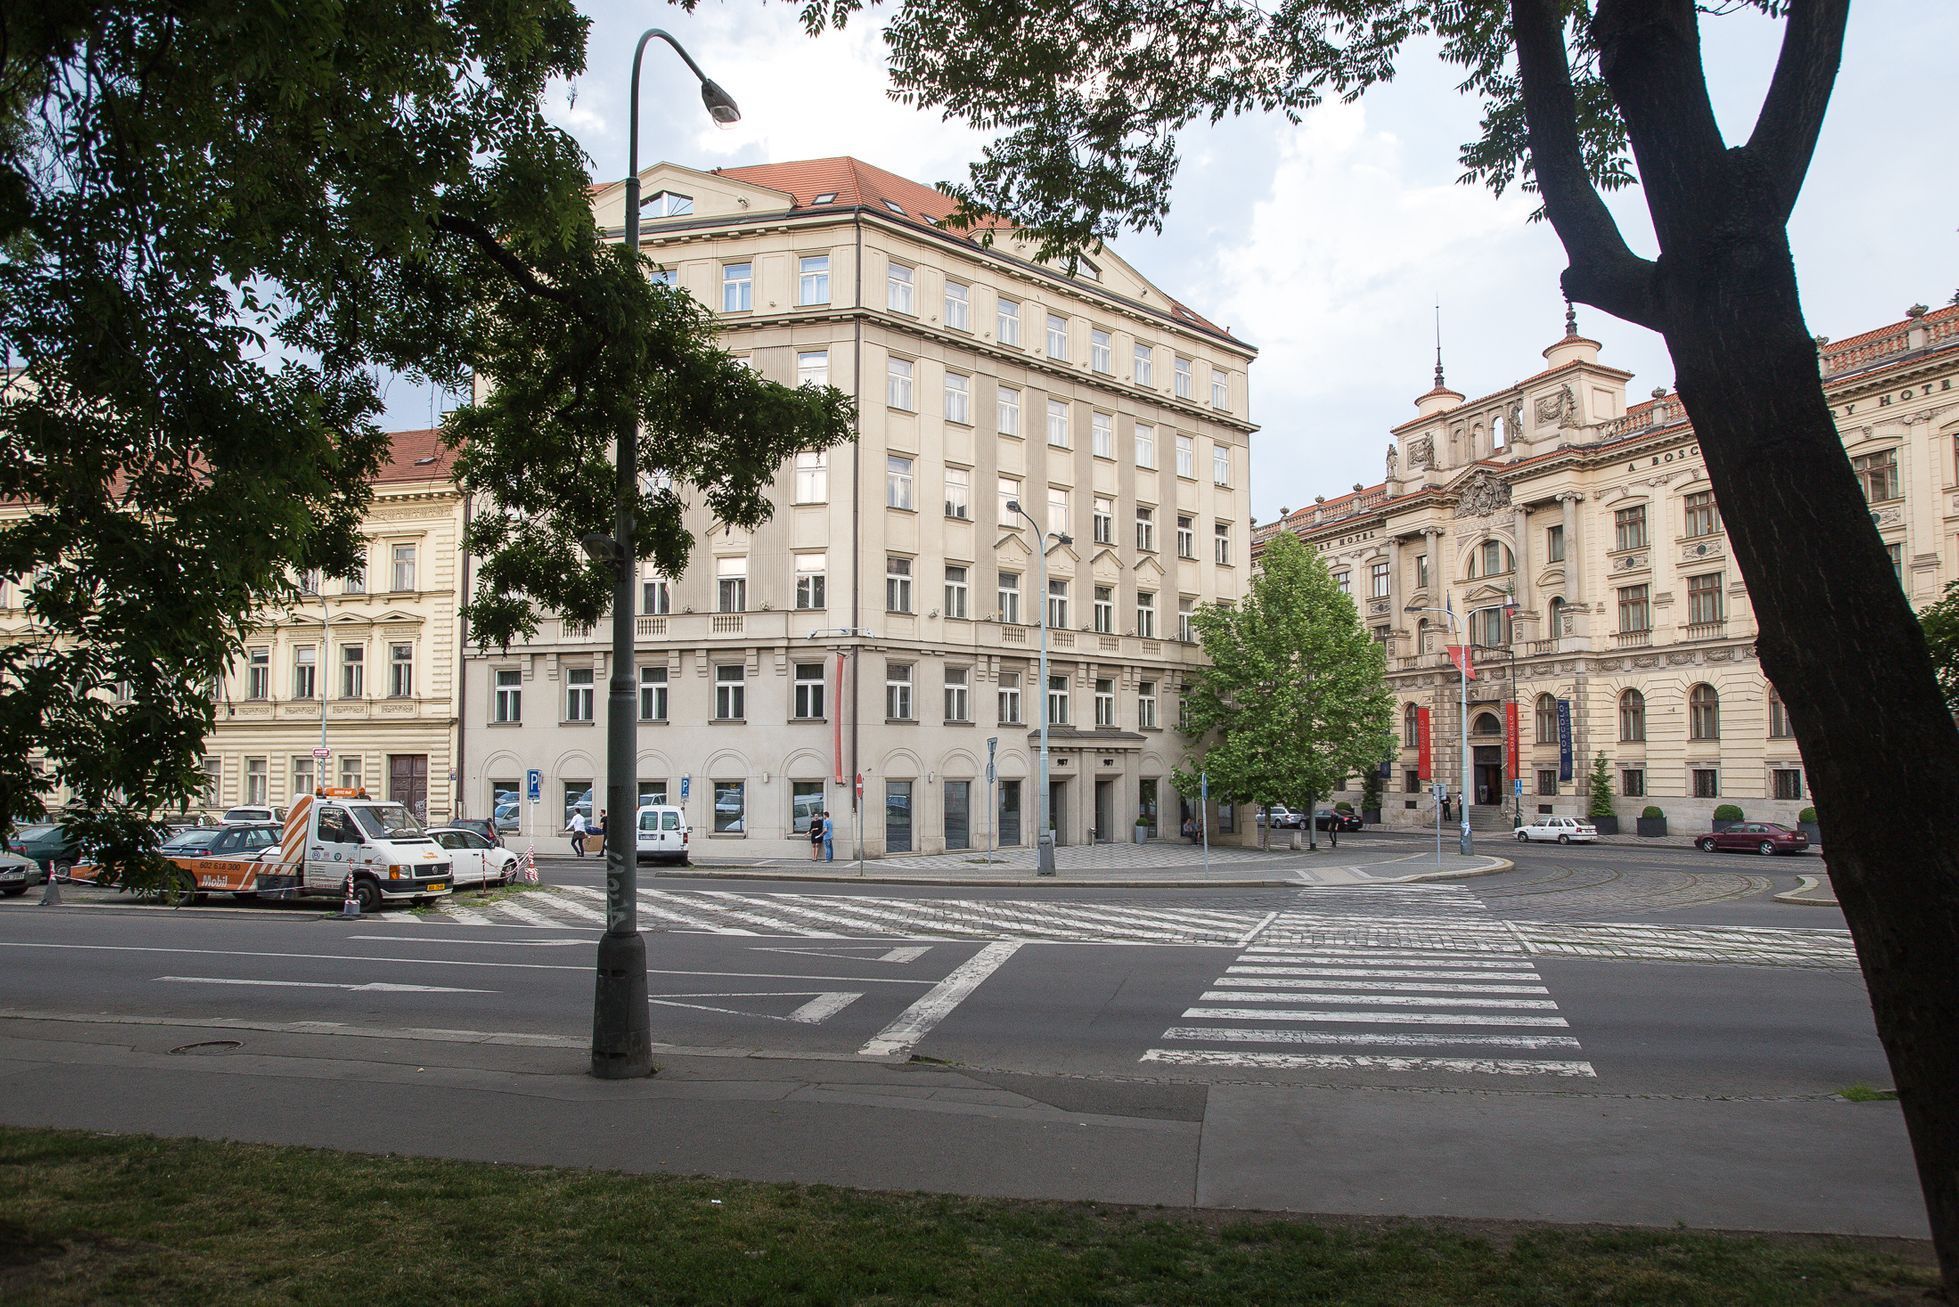 Prohlídka okolí magistrály pro chodce s architektem Petrem Kučerou a IPR